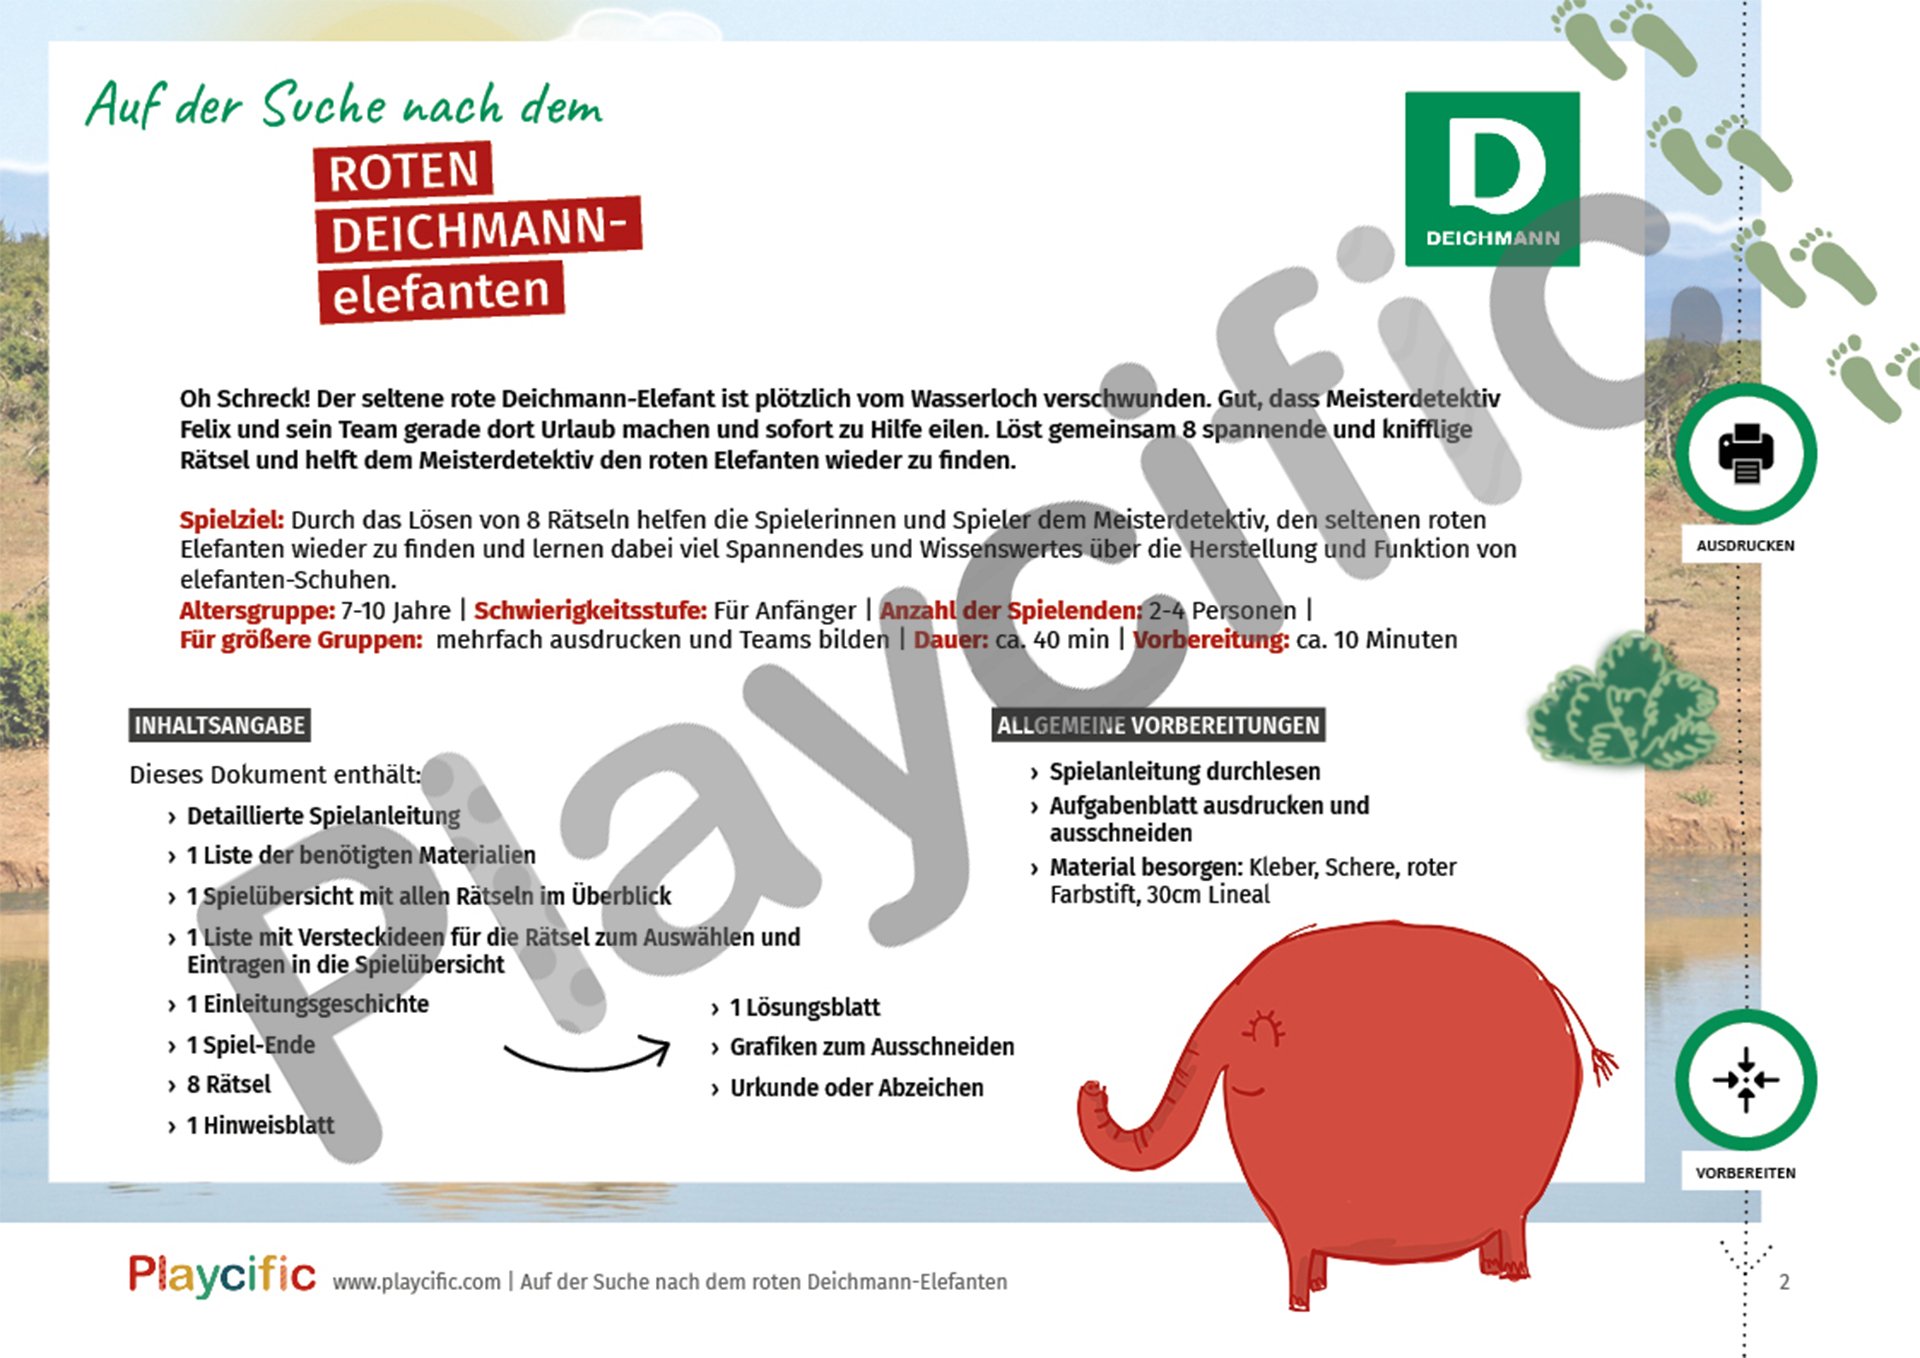 Ansicht Seite 2 aus dem Spiel "Auf der Suche nach dem roten Deichmann-Elefant"